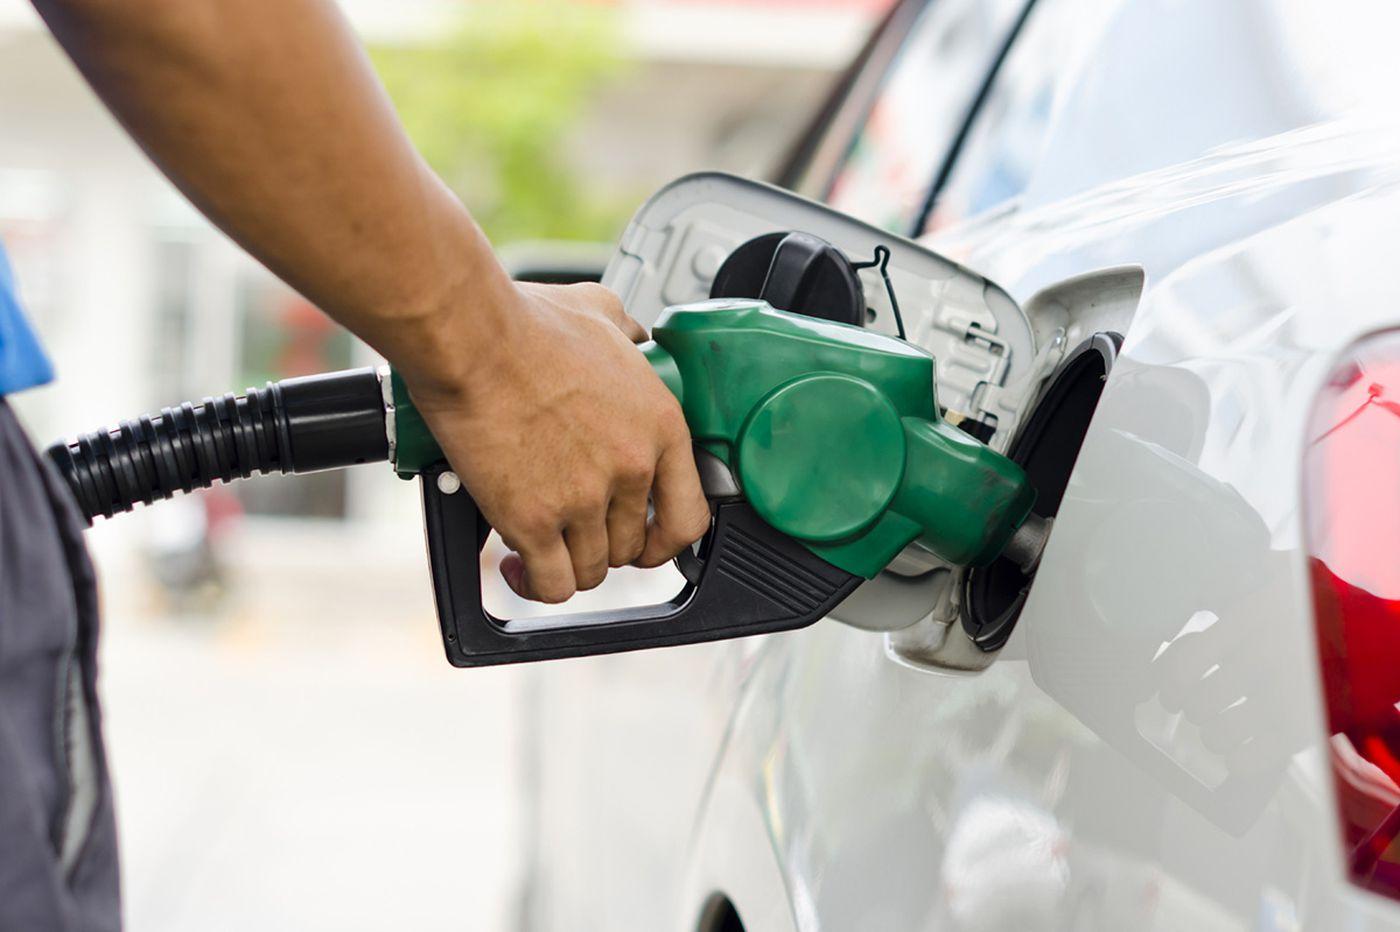 Обсъждат предложение: От 1 юни 25 ст. отстъпка на литър бензин за физически